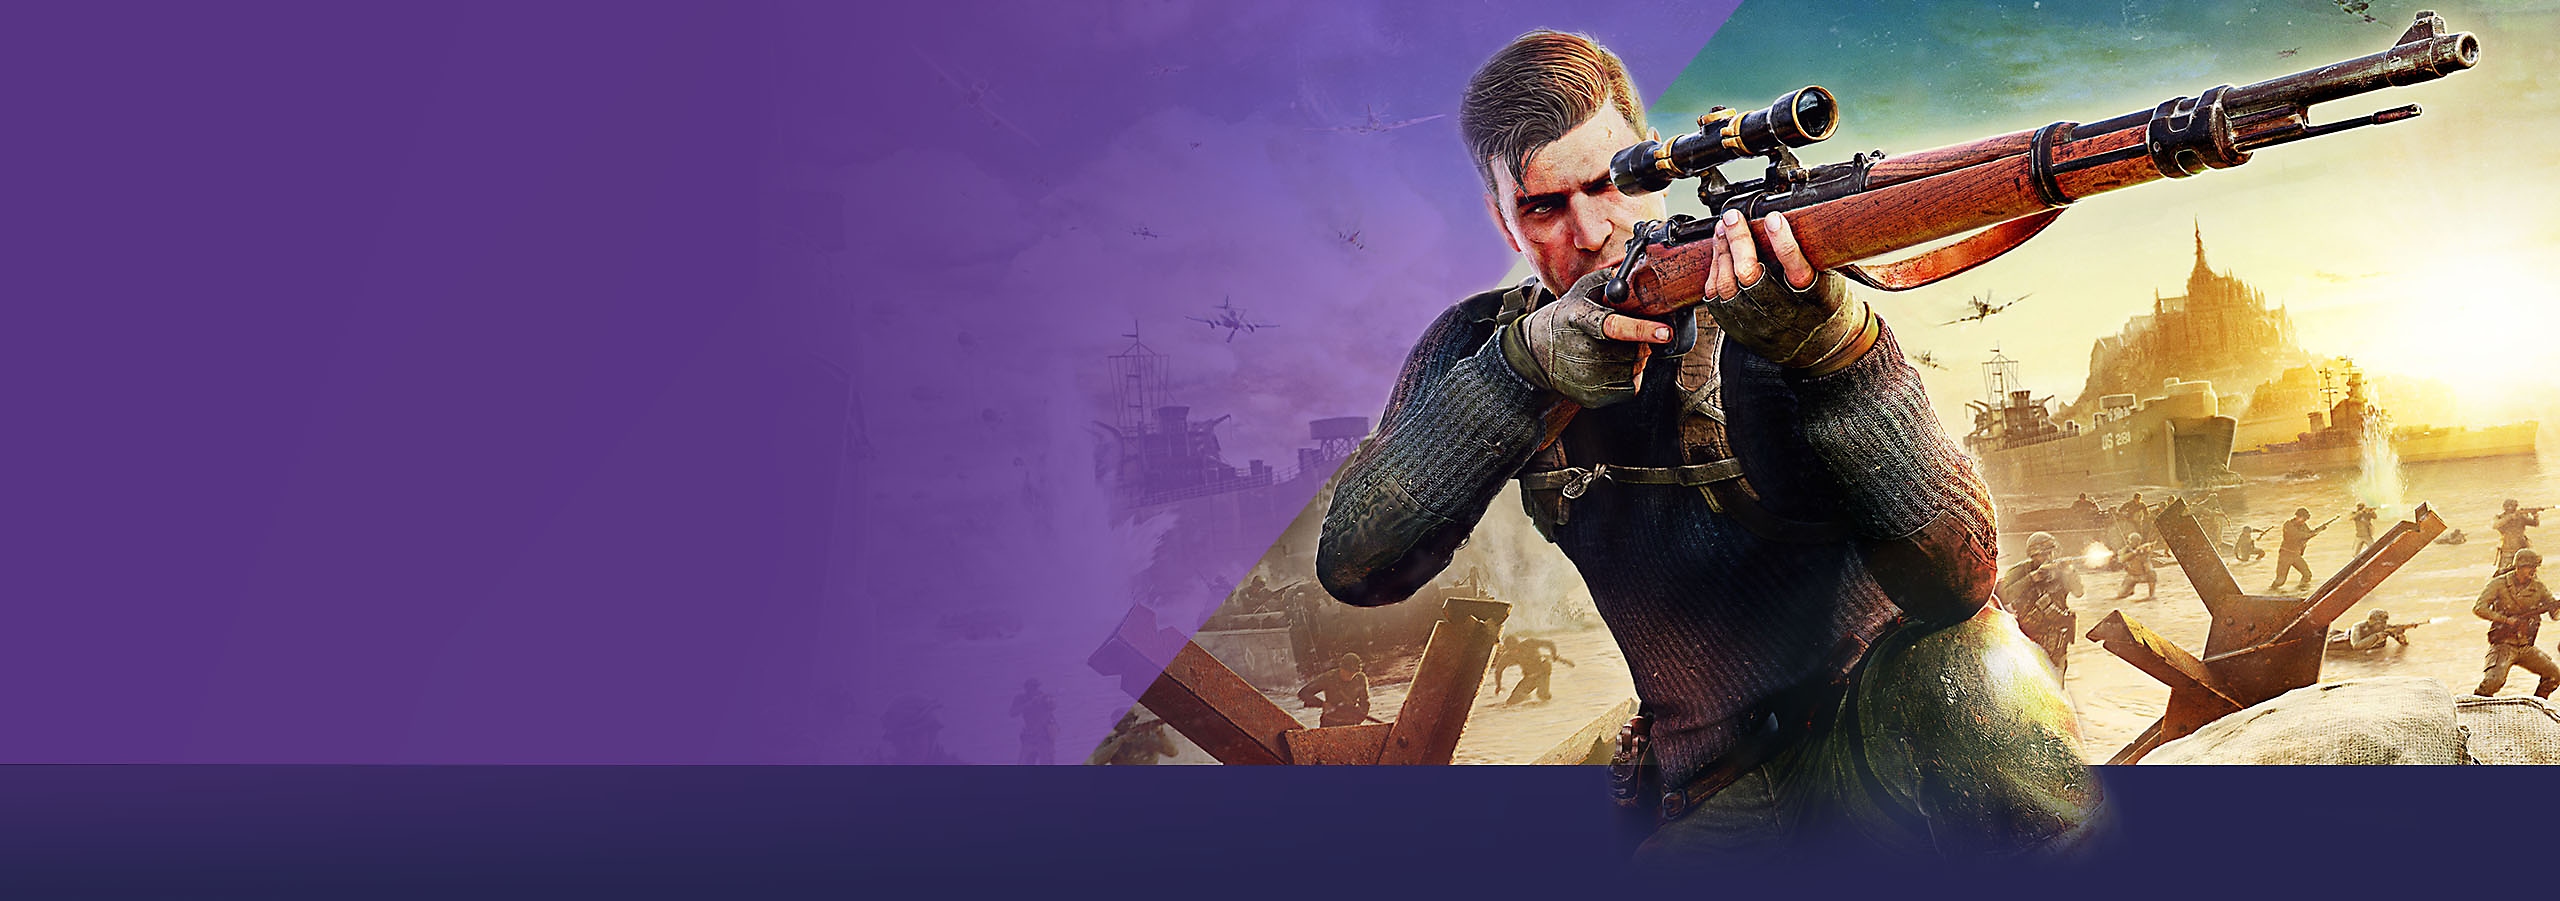 Ebben a hónapban a PlayStation kínálatában nagy méretű kép, amelyen a Sniper Elite 5 játékról készült borítókép látható